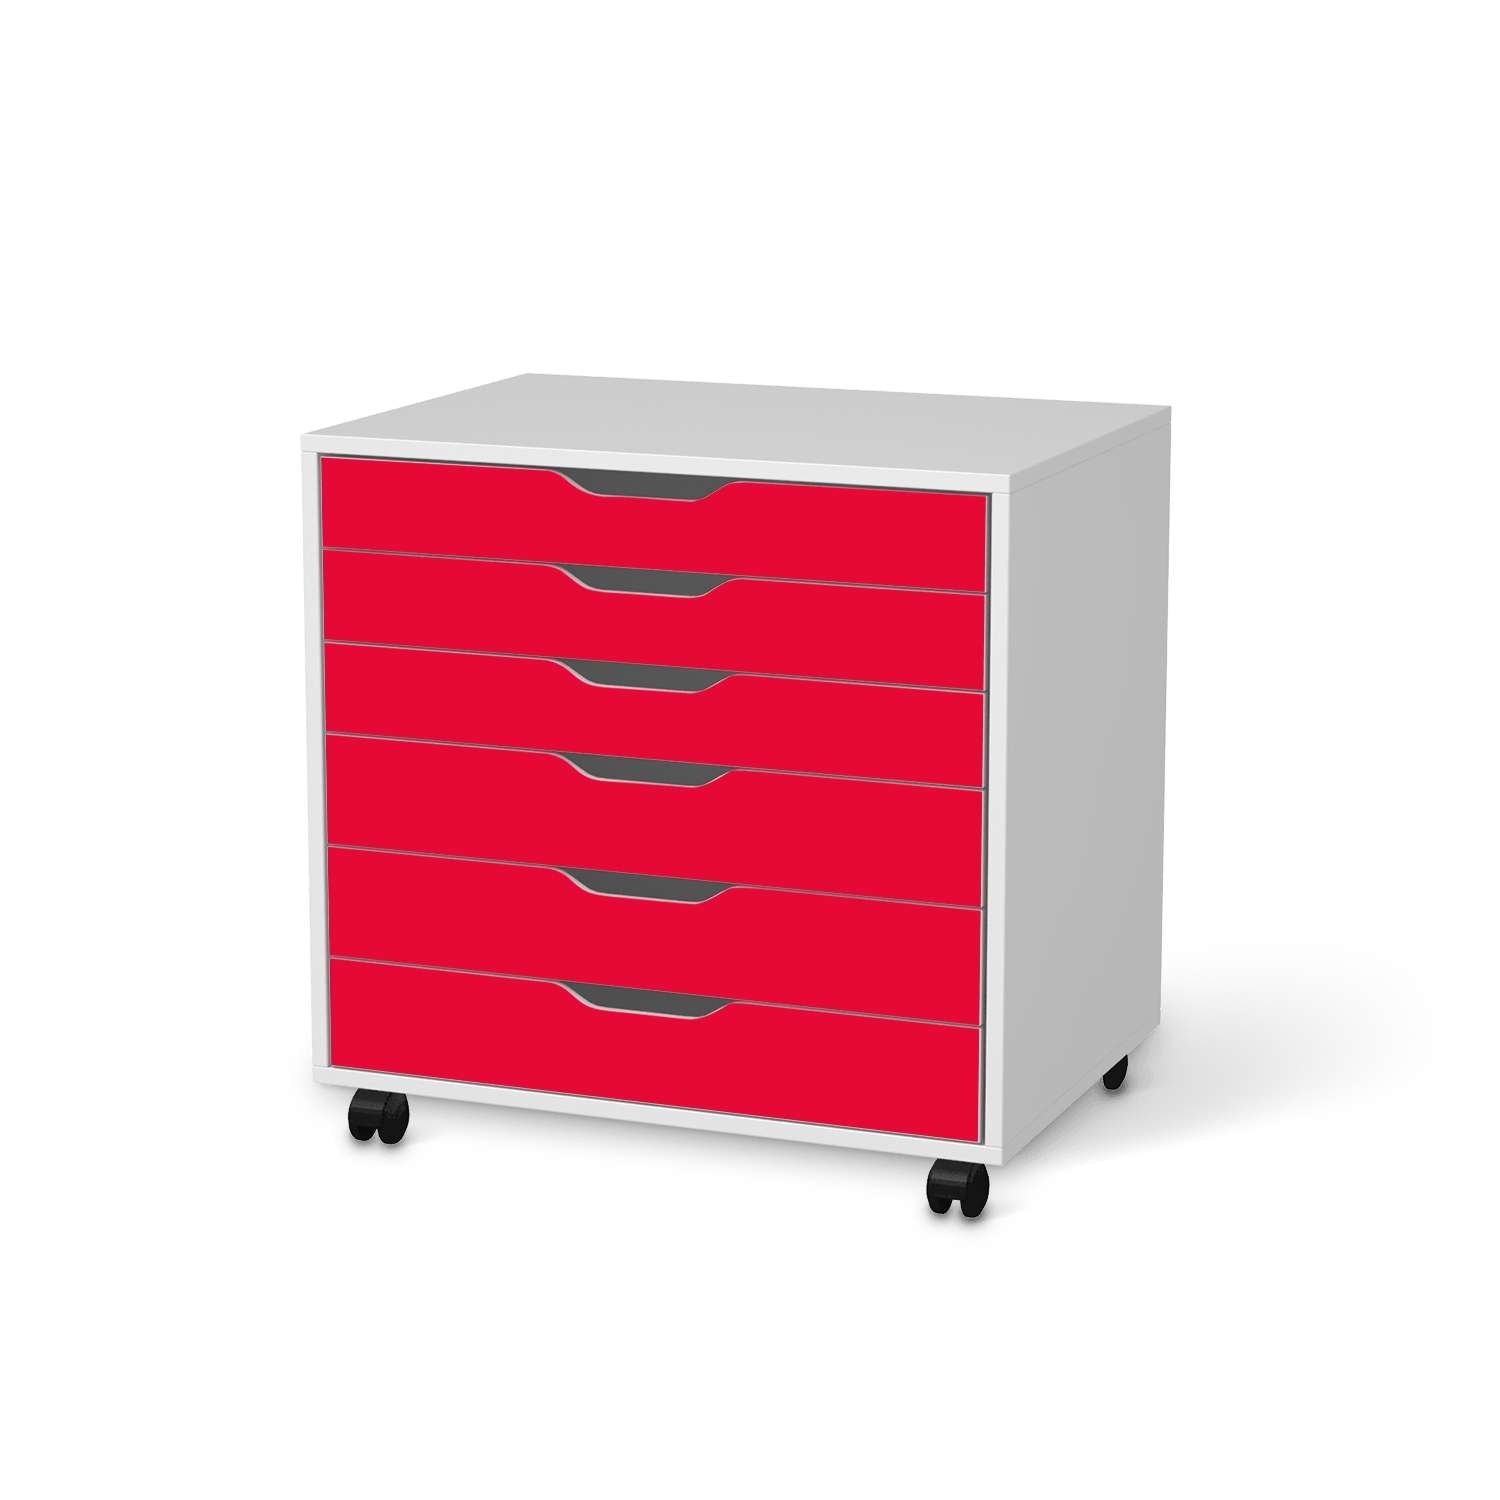 M?belfolie IKEA Alex Rollcontainer 6 Schubladen - Design: Rot Light von creatisto